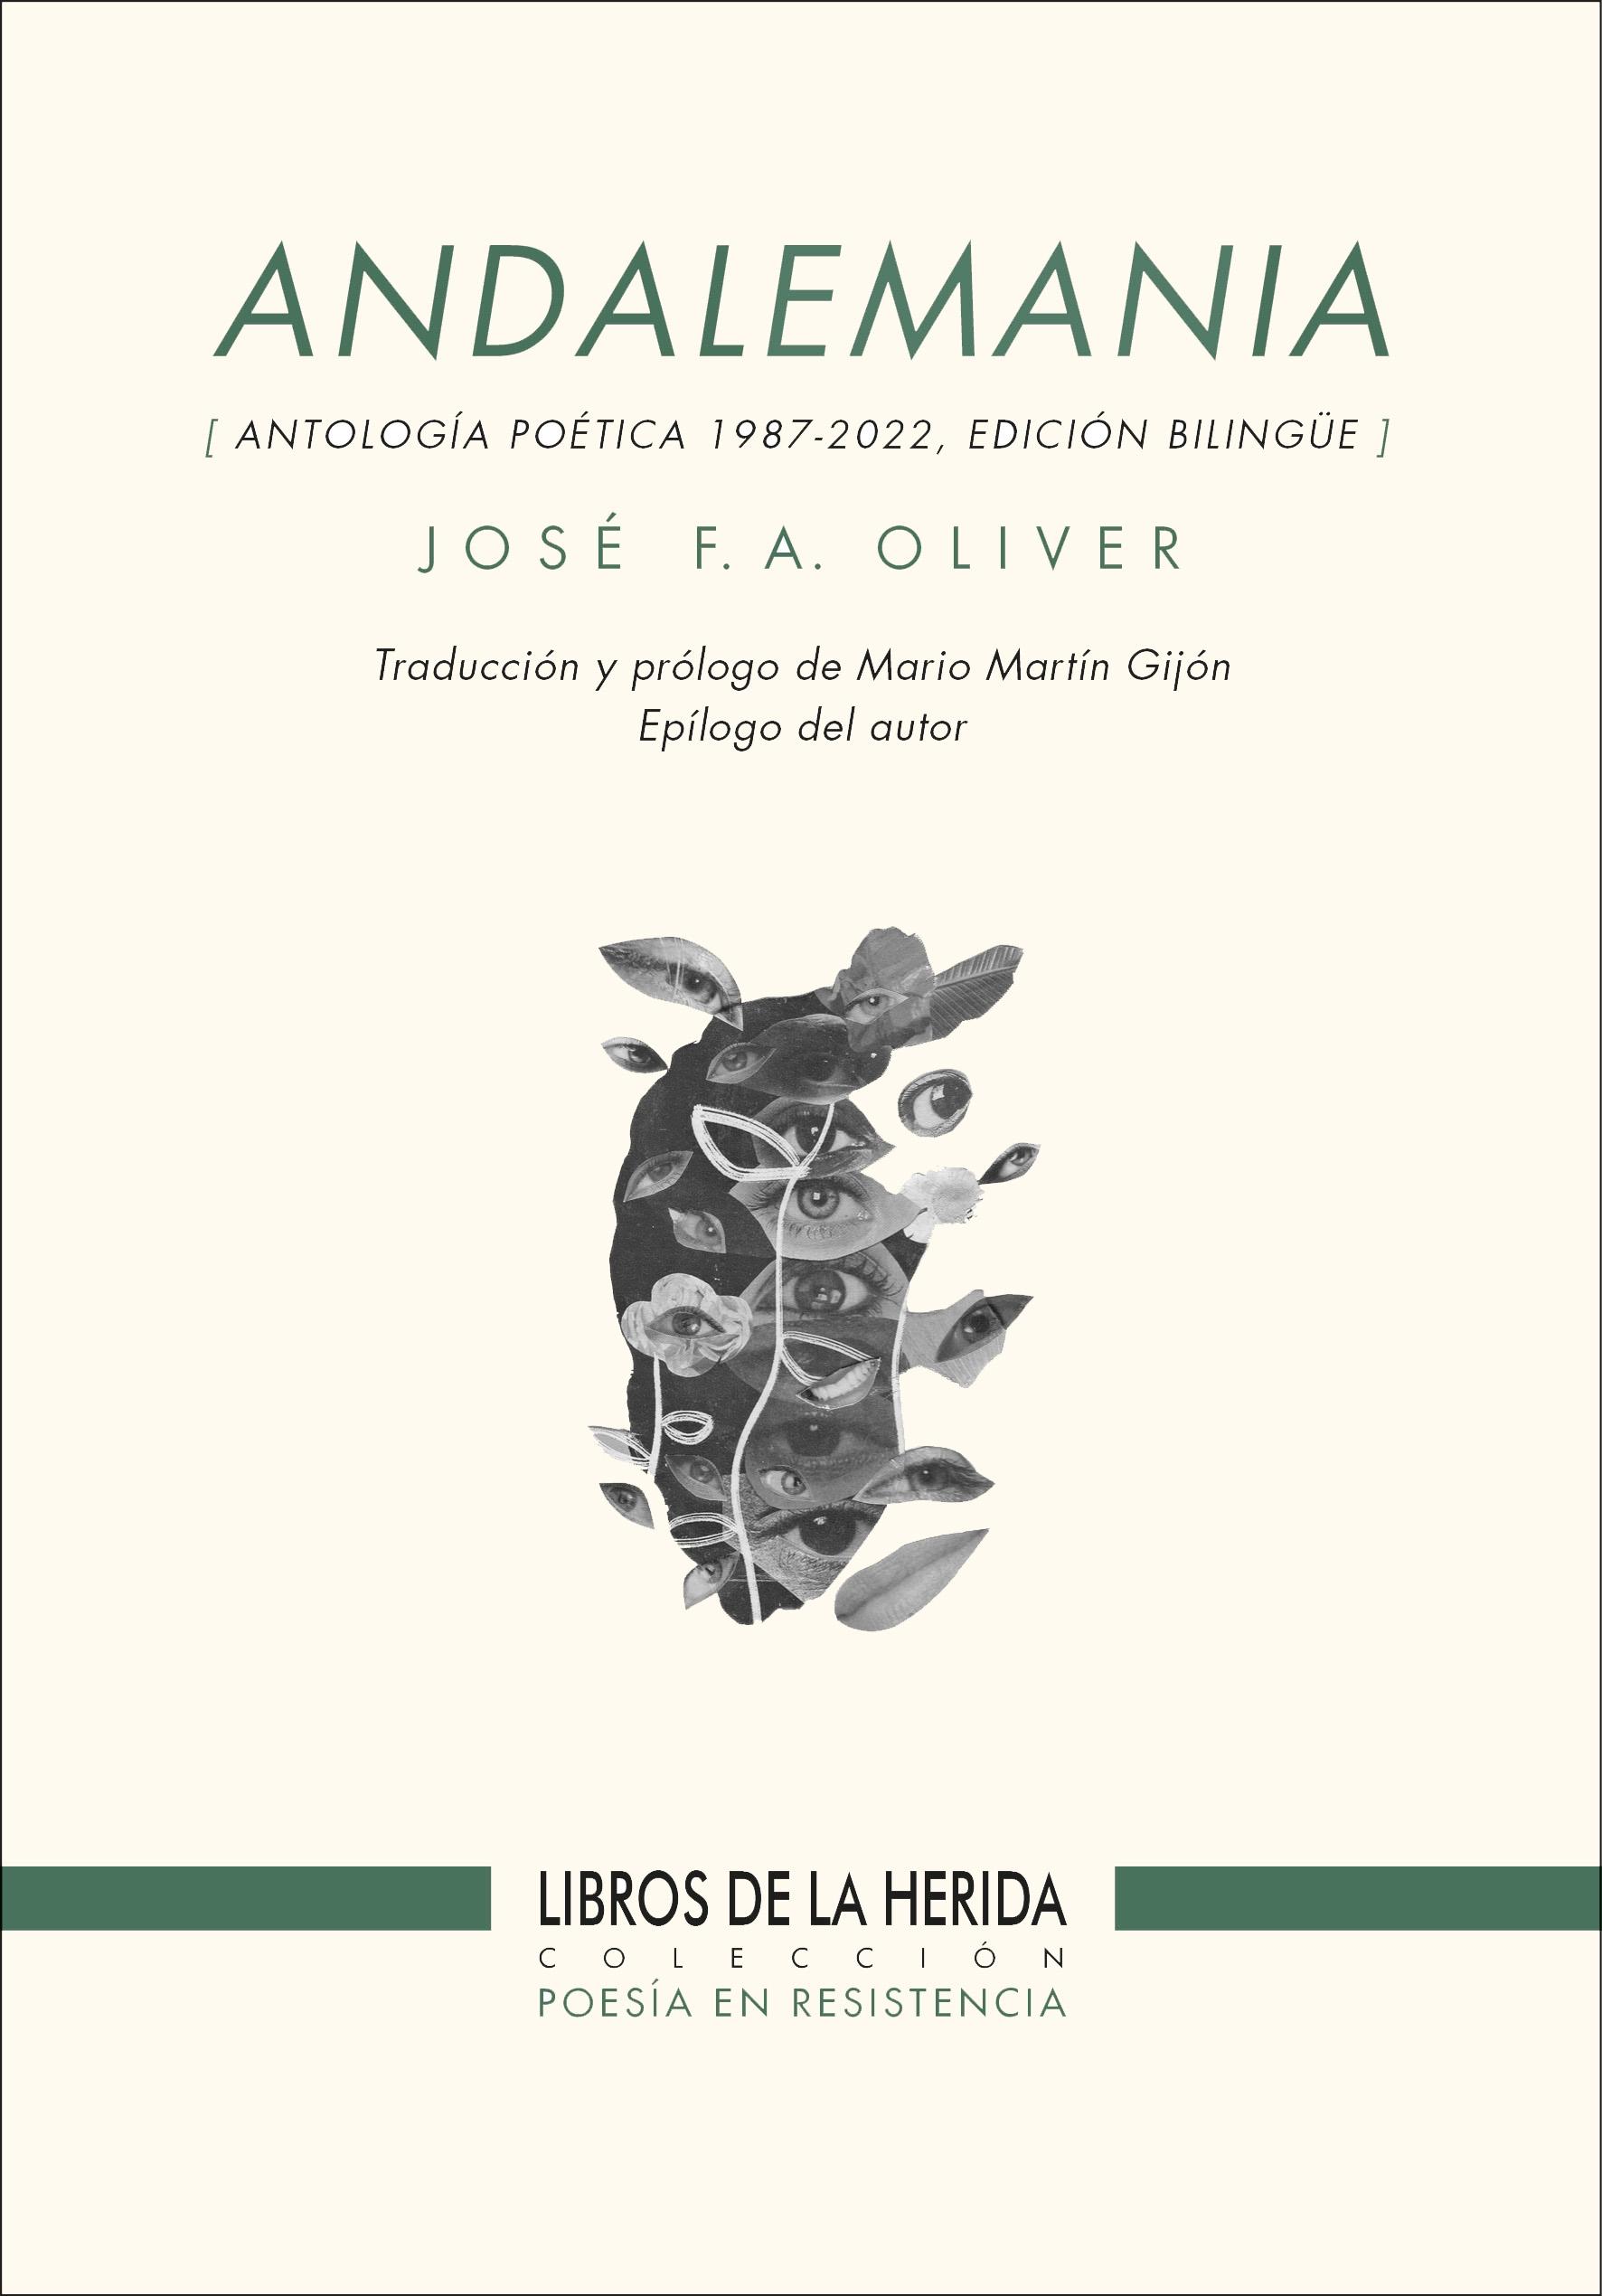 Andalemania "(Antología Poética 1987-2022) Edición Bilingüe"